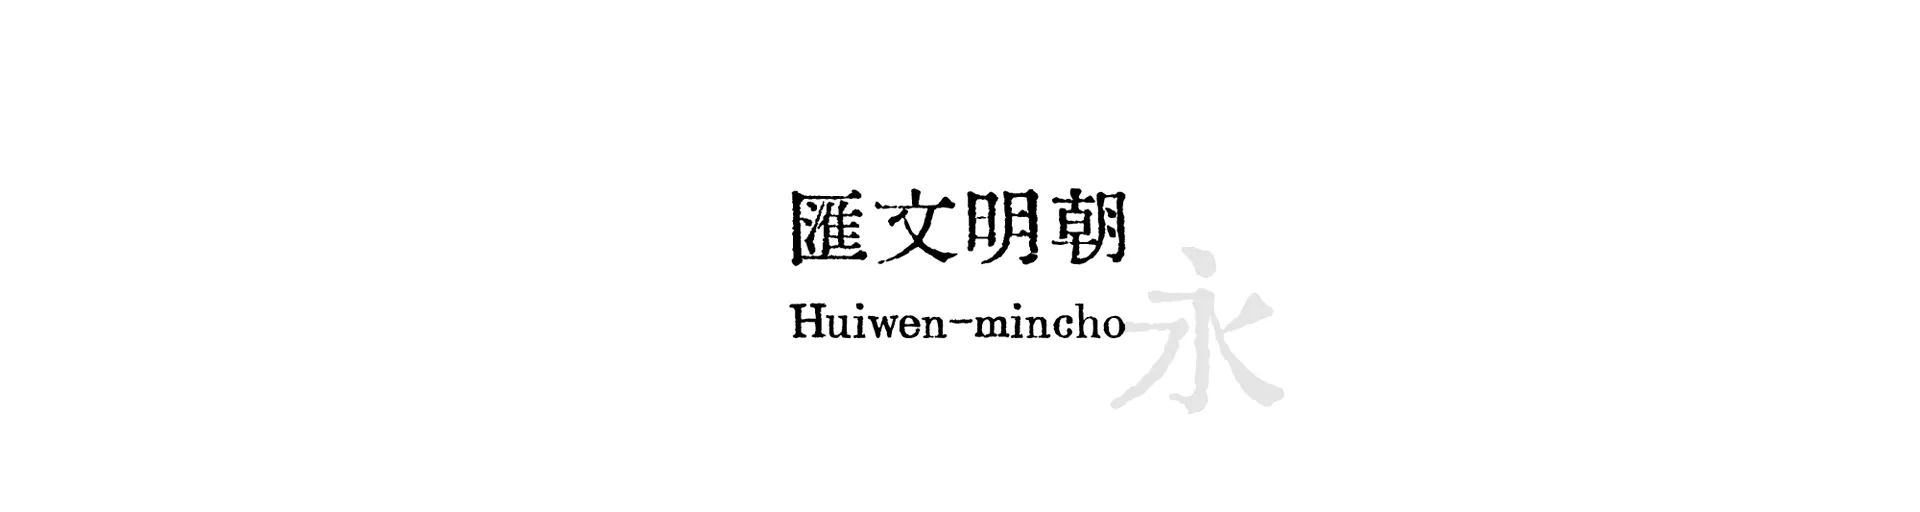 Huiwen-mincho